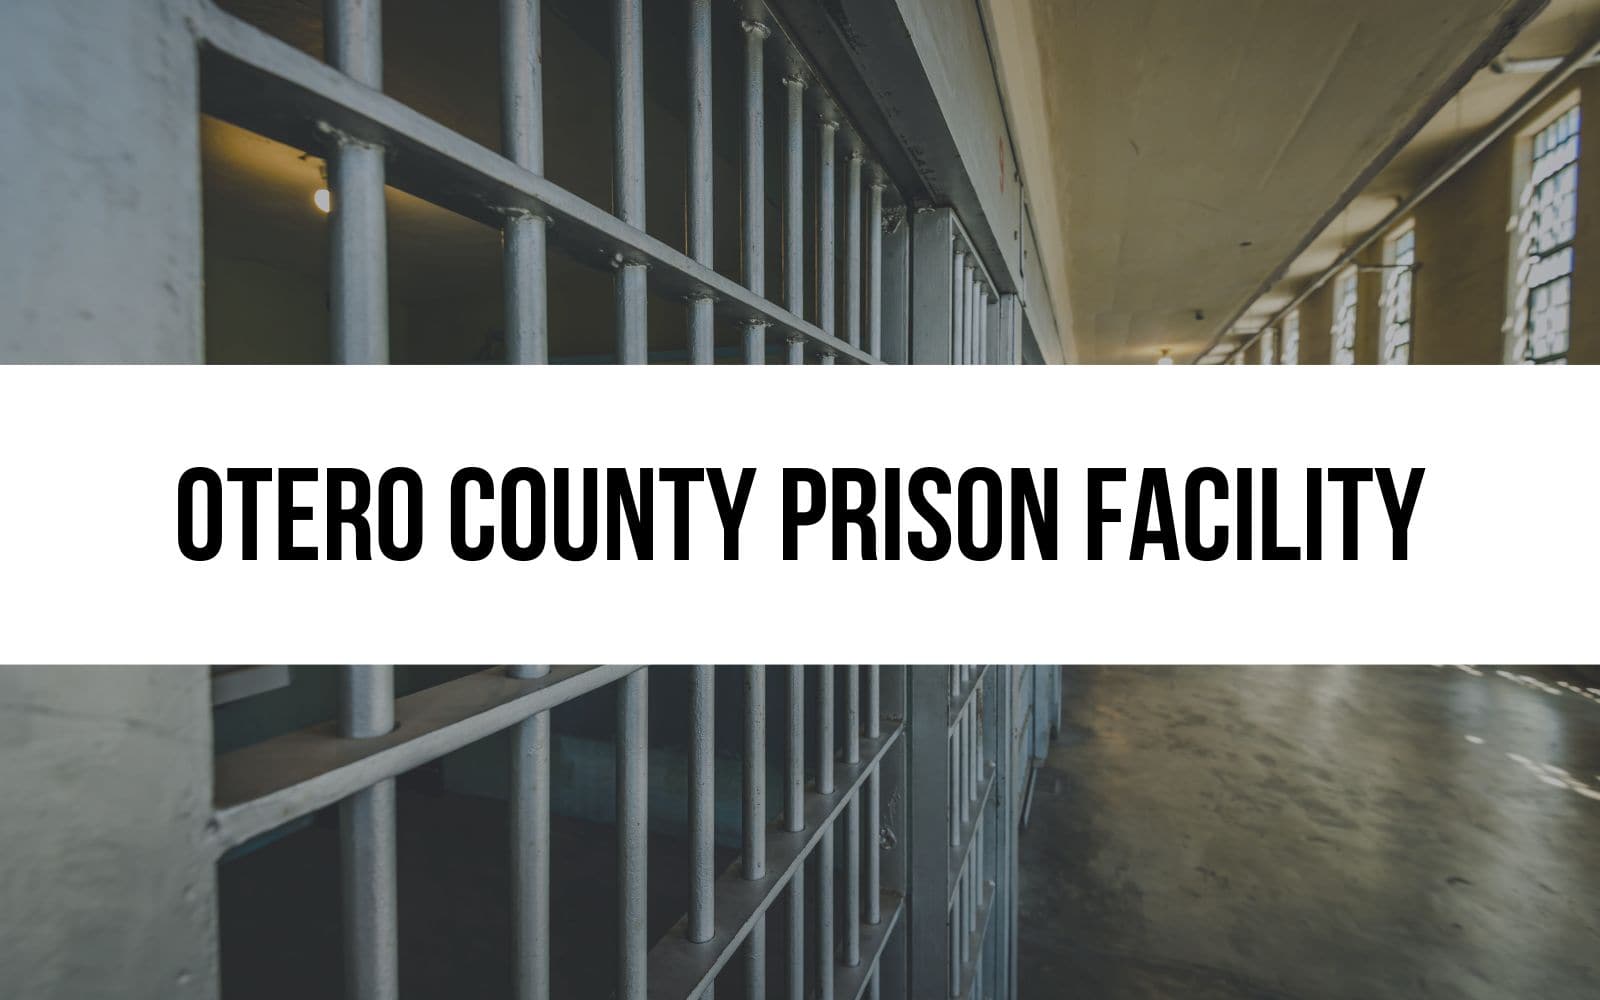 Otero County Prison Facility